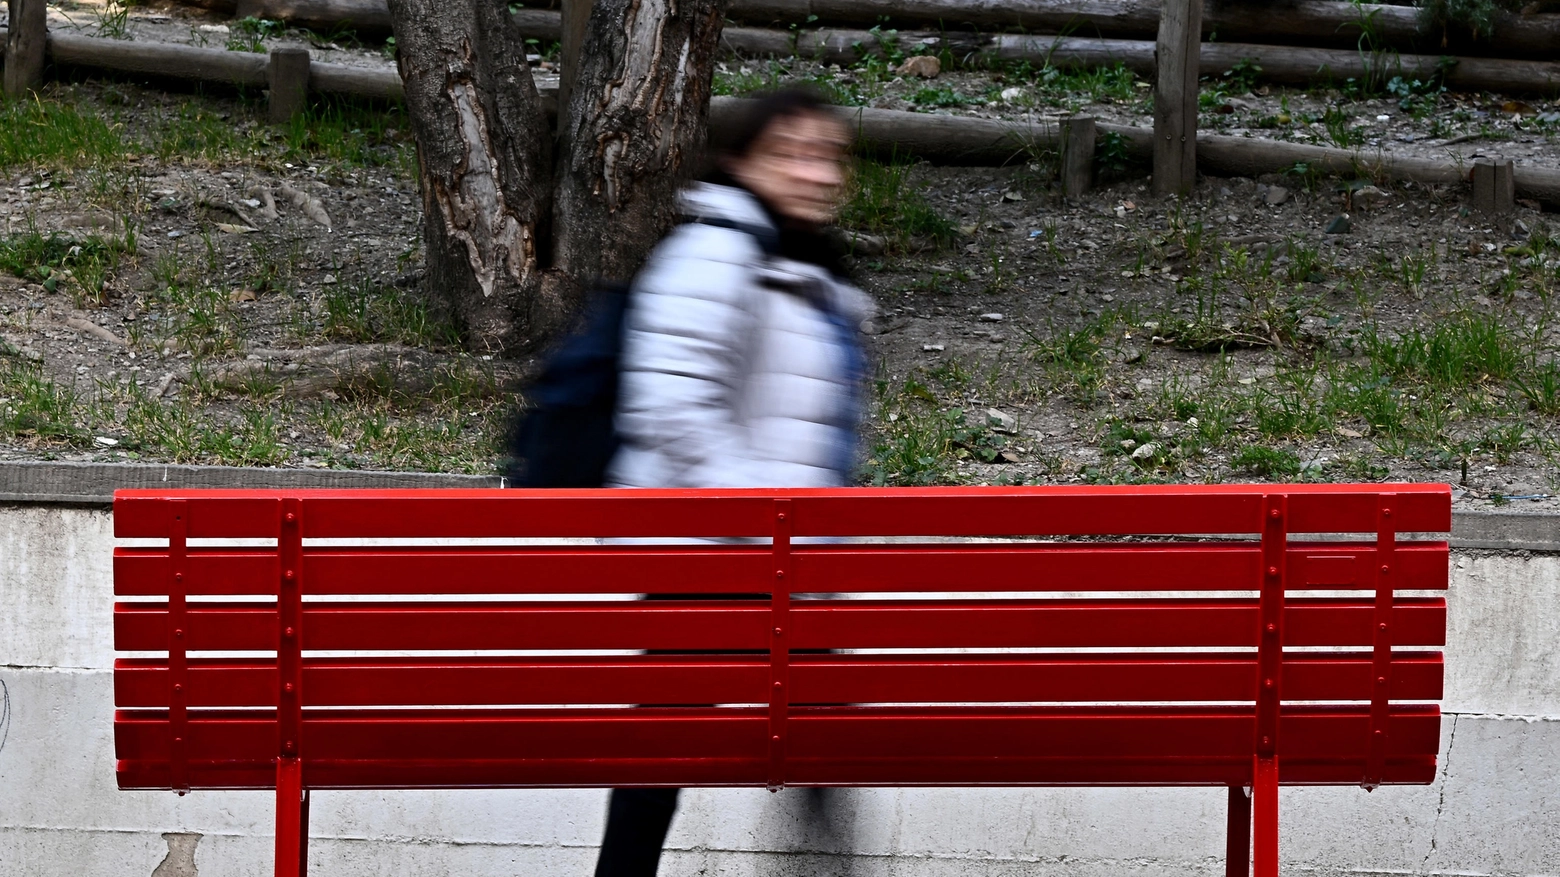 Una panchina rossa, simbolo della lotta alla violenza contro le donne